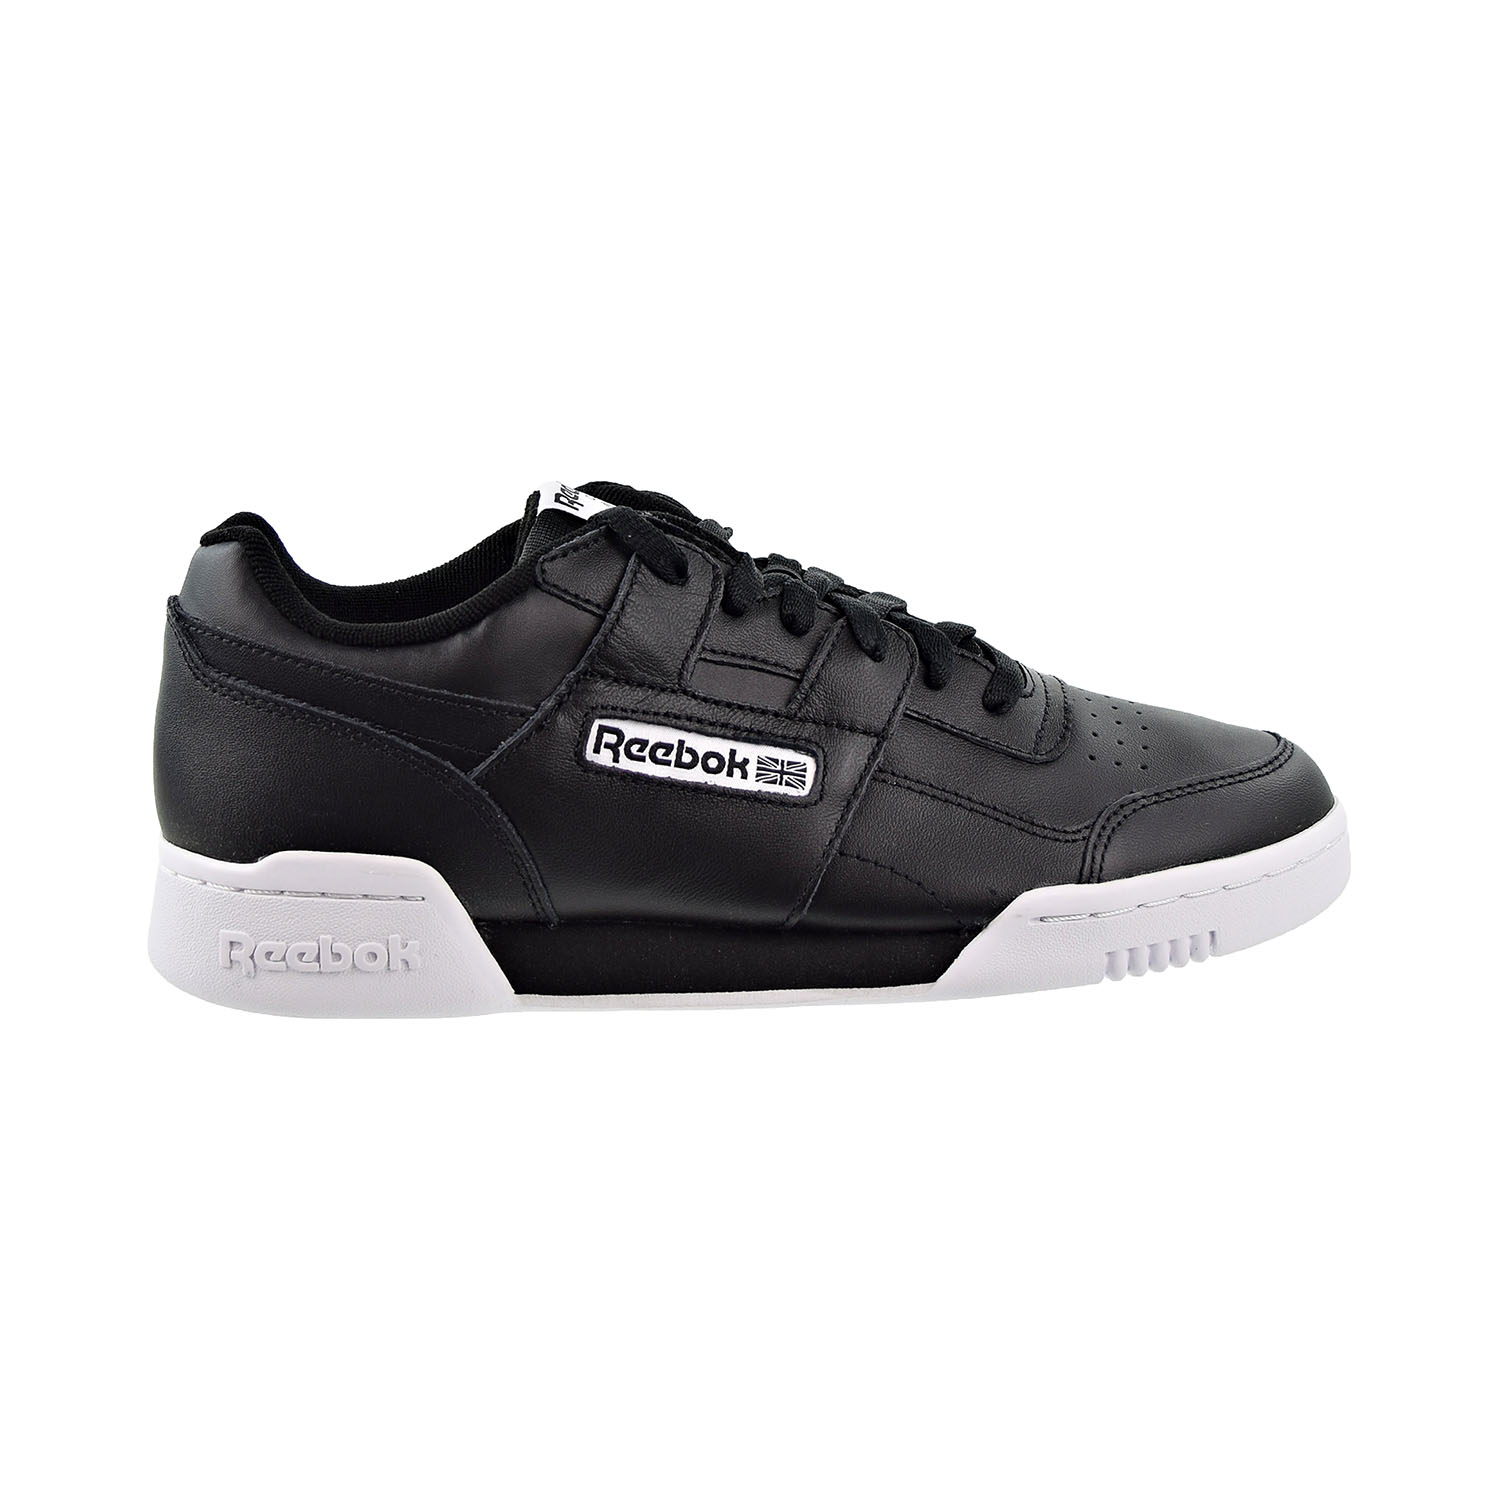 Reebok Workout Plus Men S Shoes Black White Dv4314 Ebay